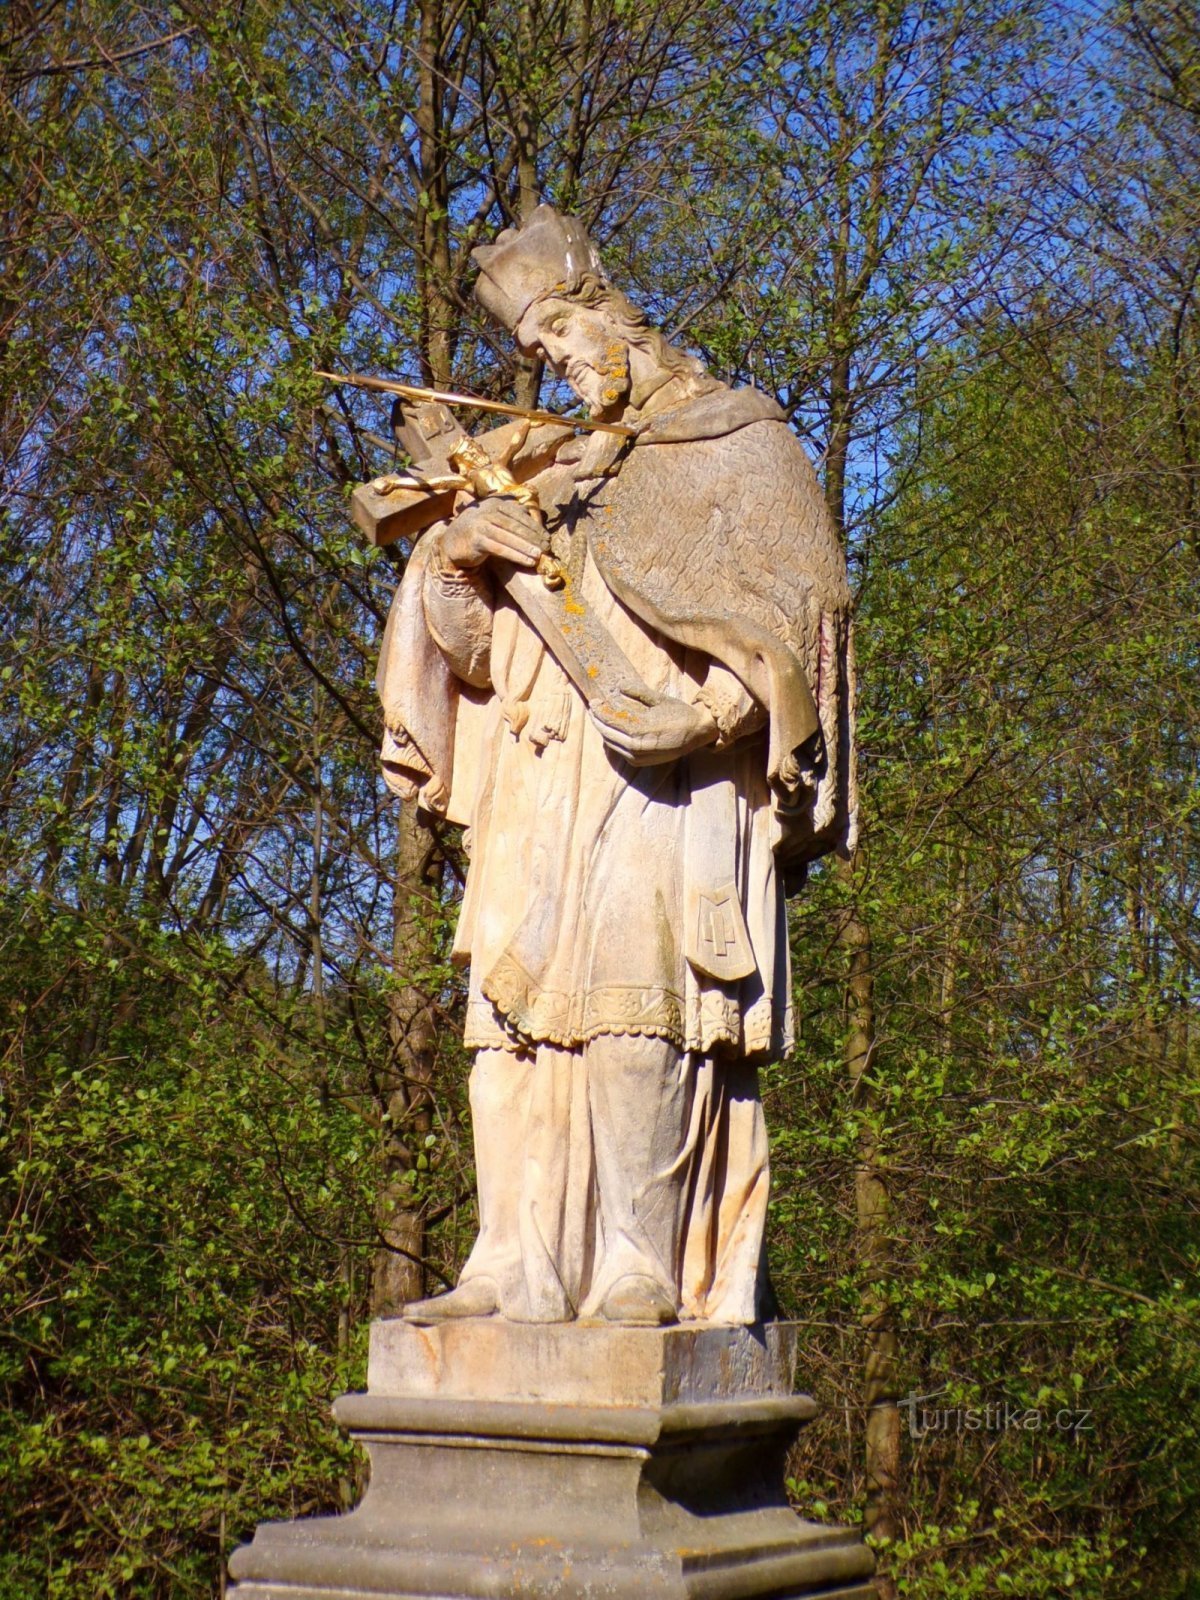 Kip sv. Janeza Nepomuškega v Zaječih (Dolany, 8.5.2022. XNUMX. XNUMX)